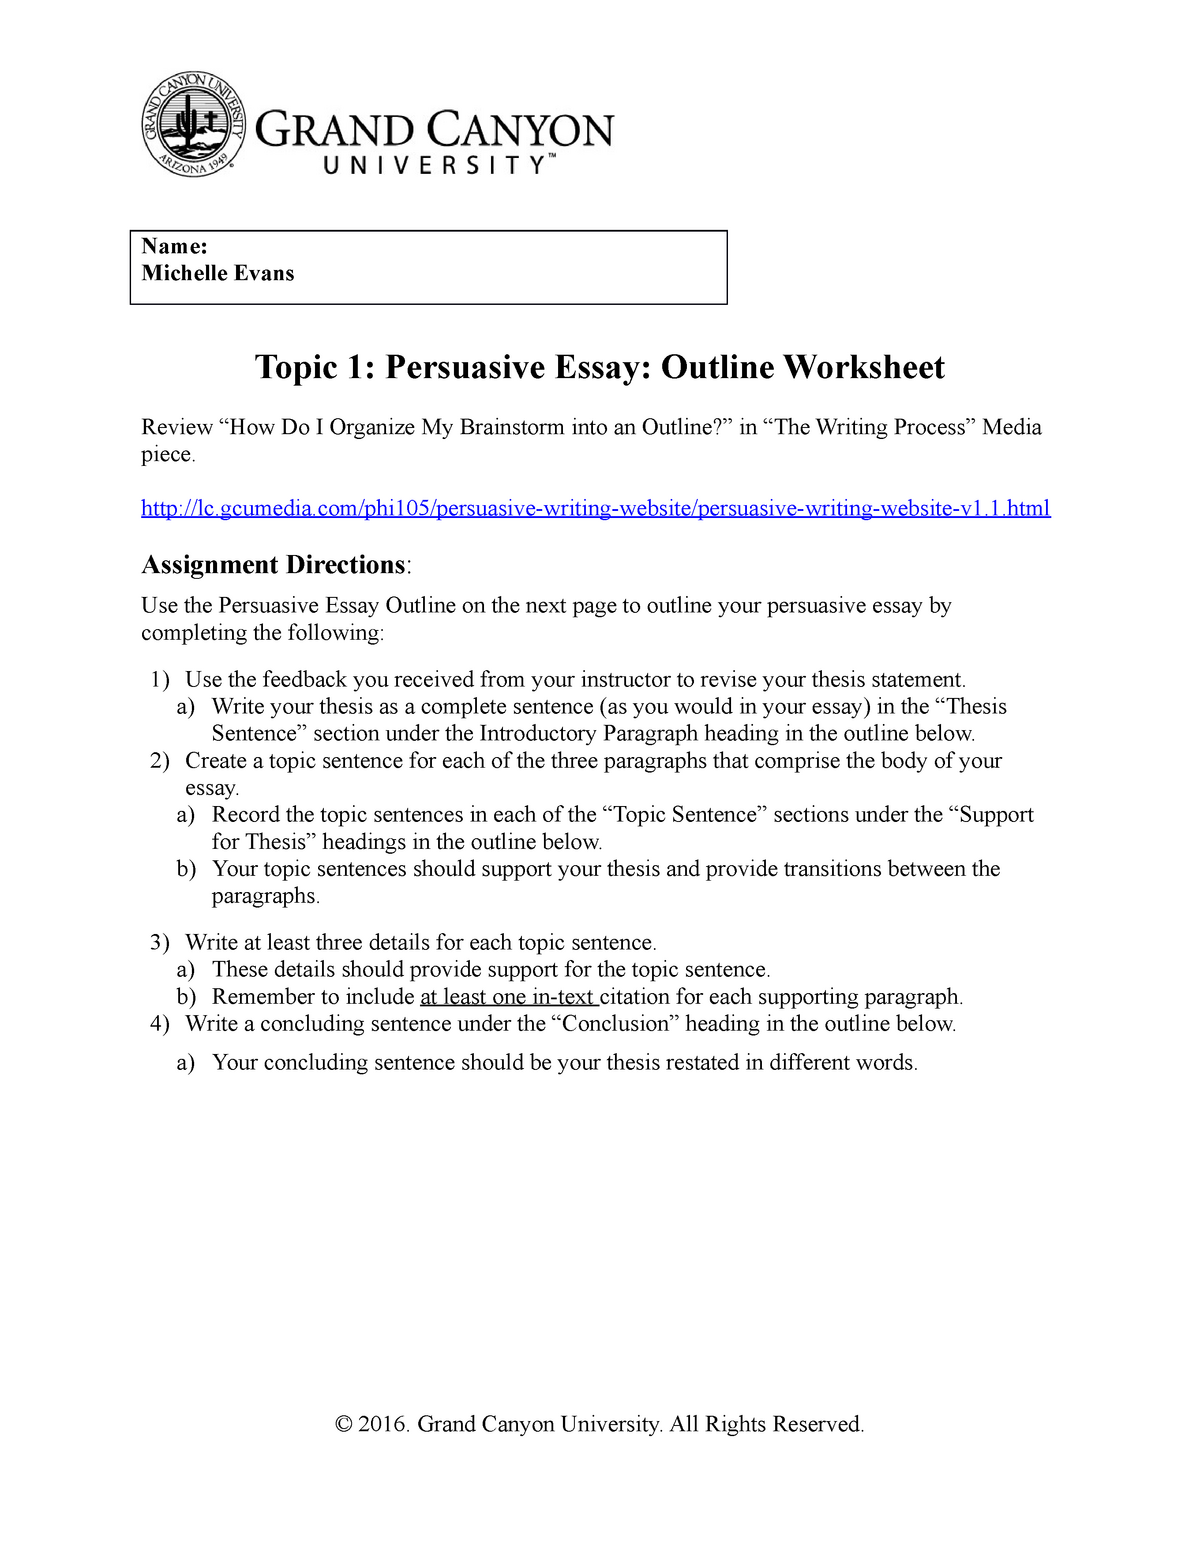 persuasive essay assignment